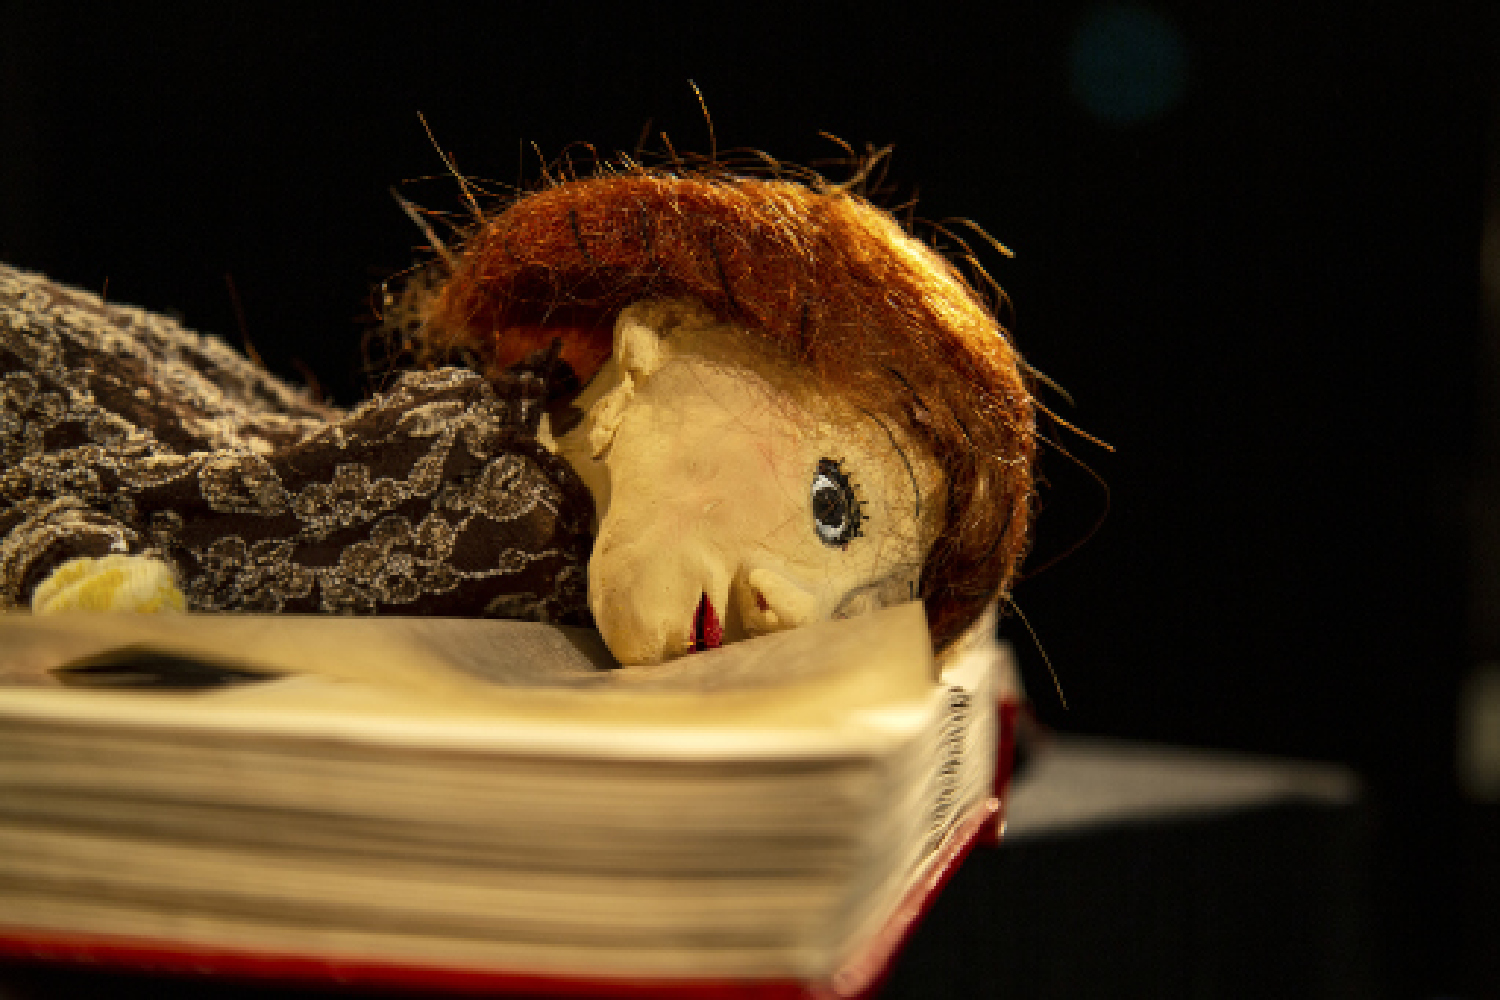 Abgebildet ist eine weibliche Handpuppe mit weißem Gesicht und roten Haaren, die sich vornüber auf die Seiten eines geöffneten Buchs legt.